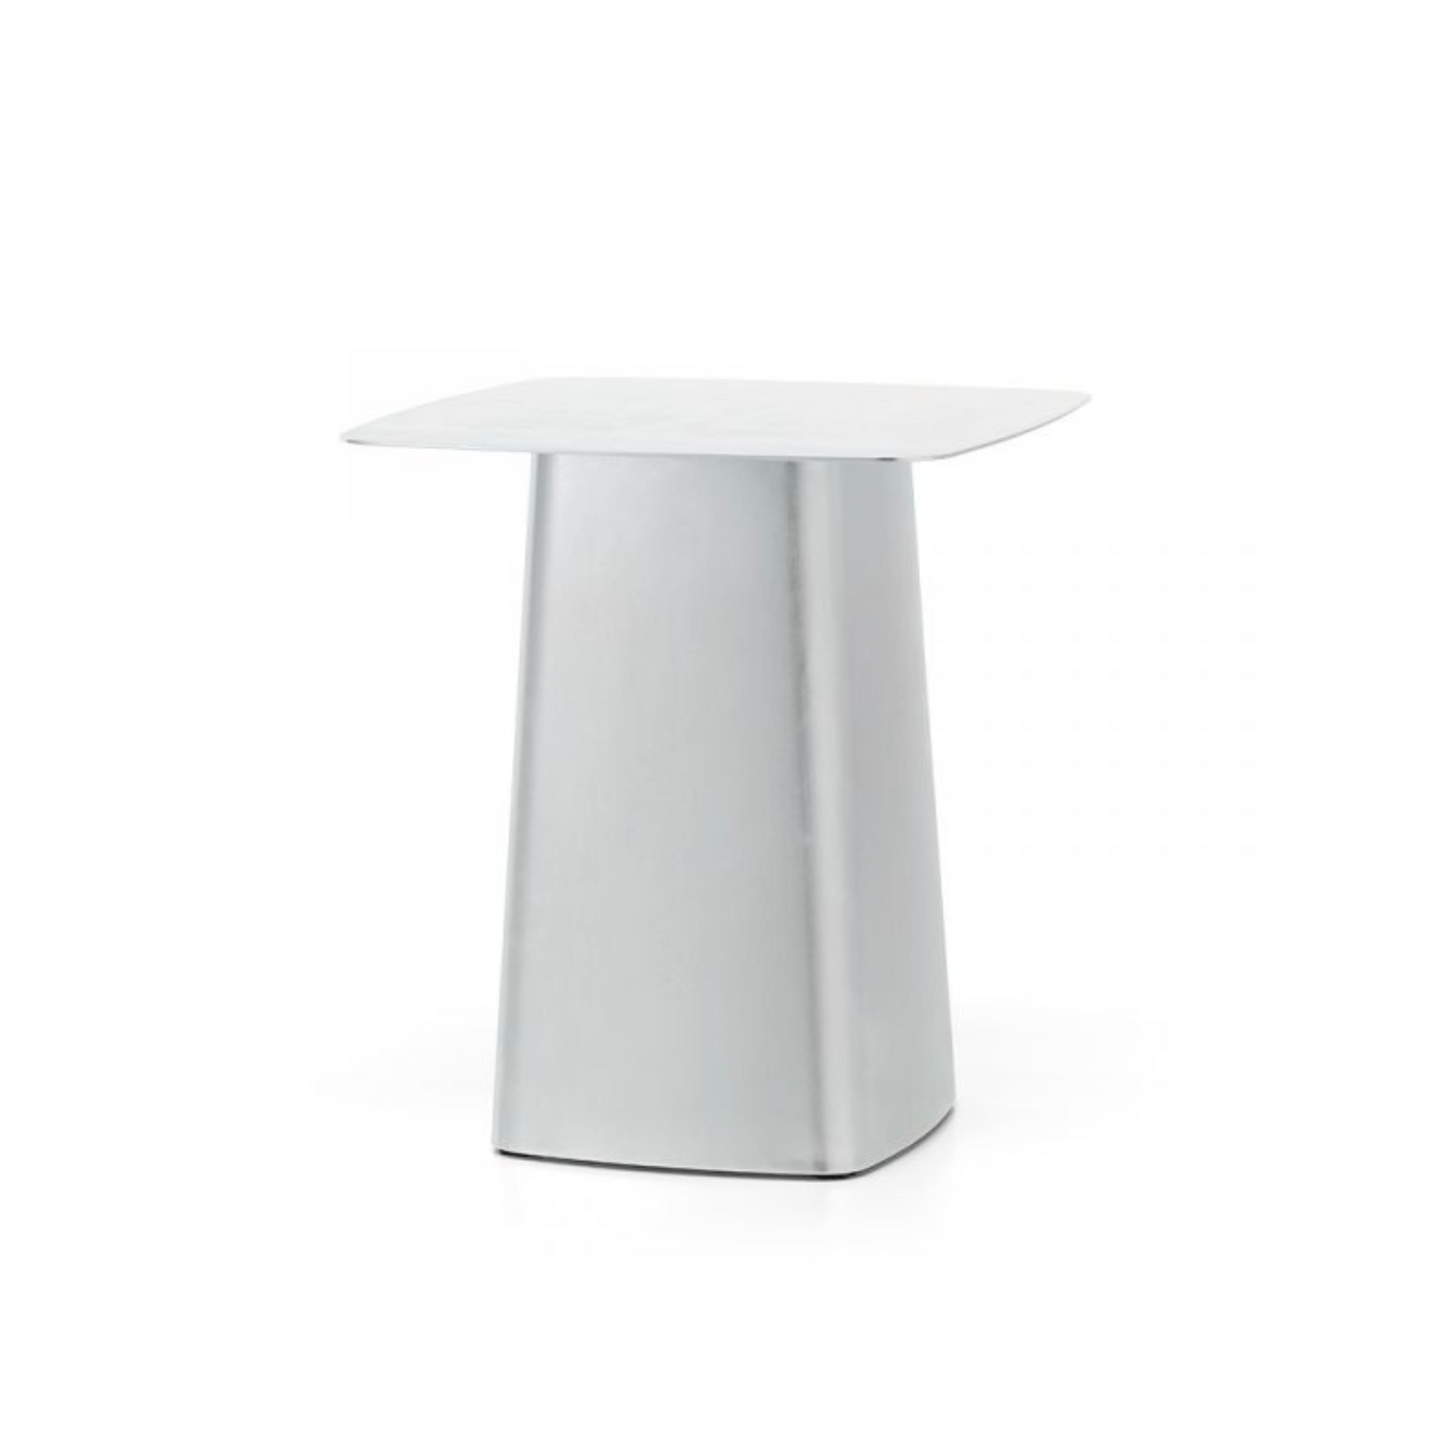 Vitra Metal Side Tables medium galvanised